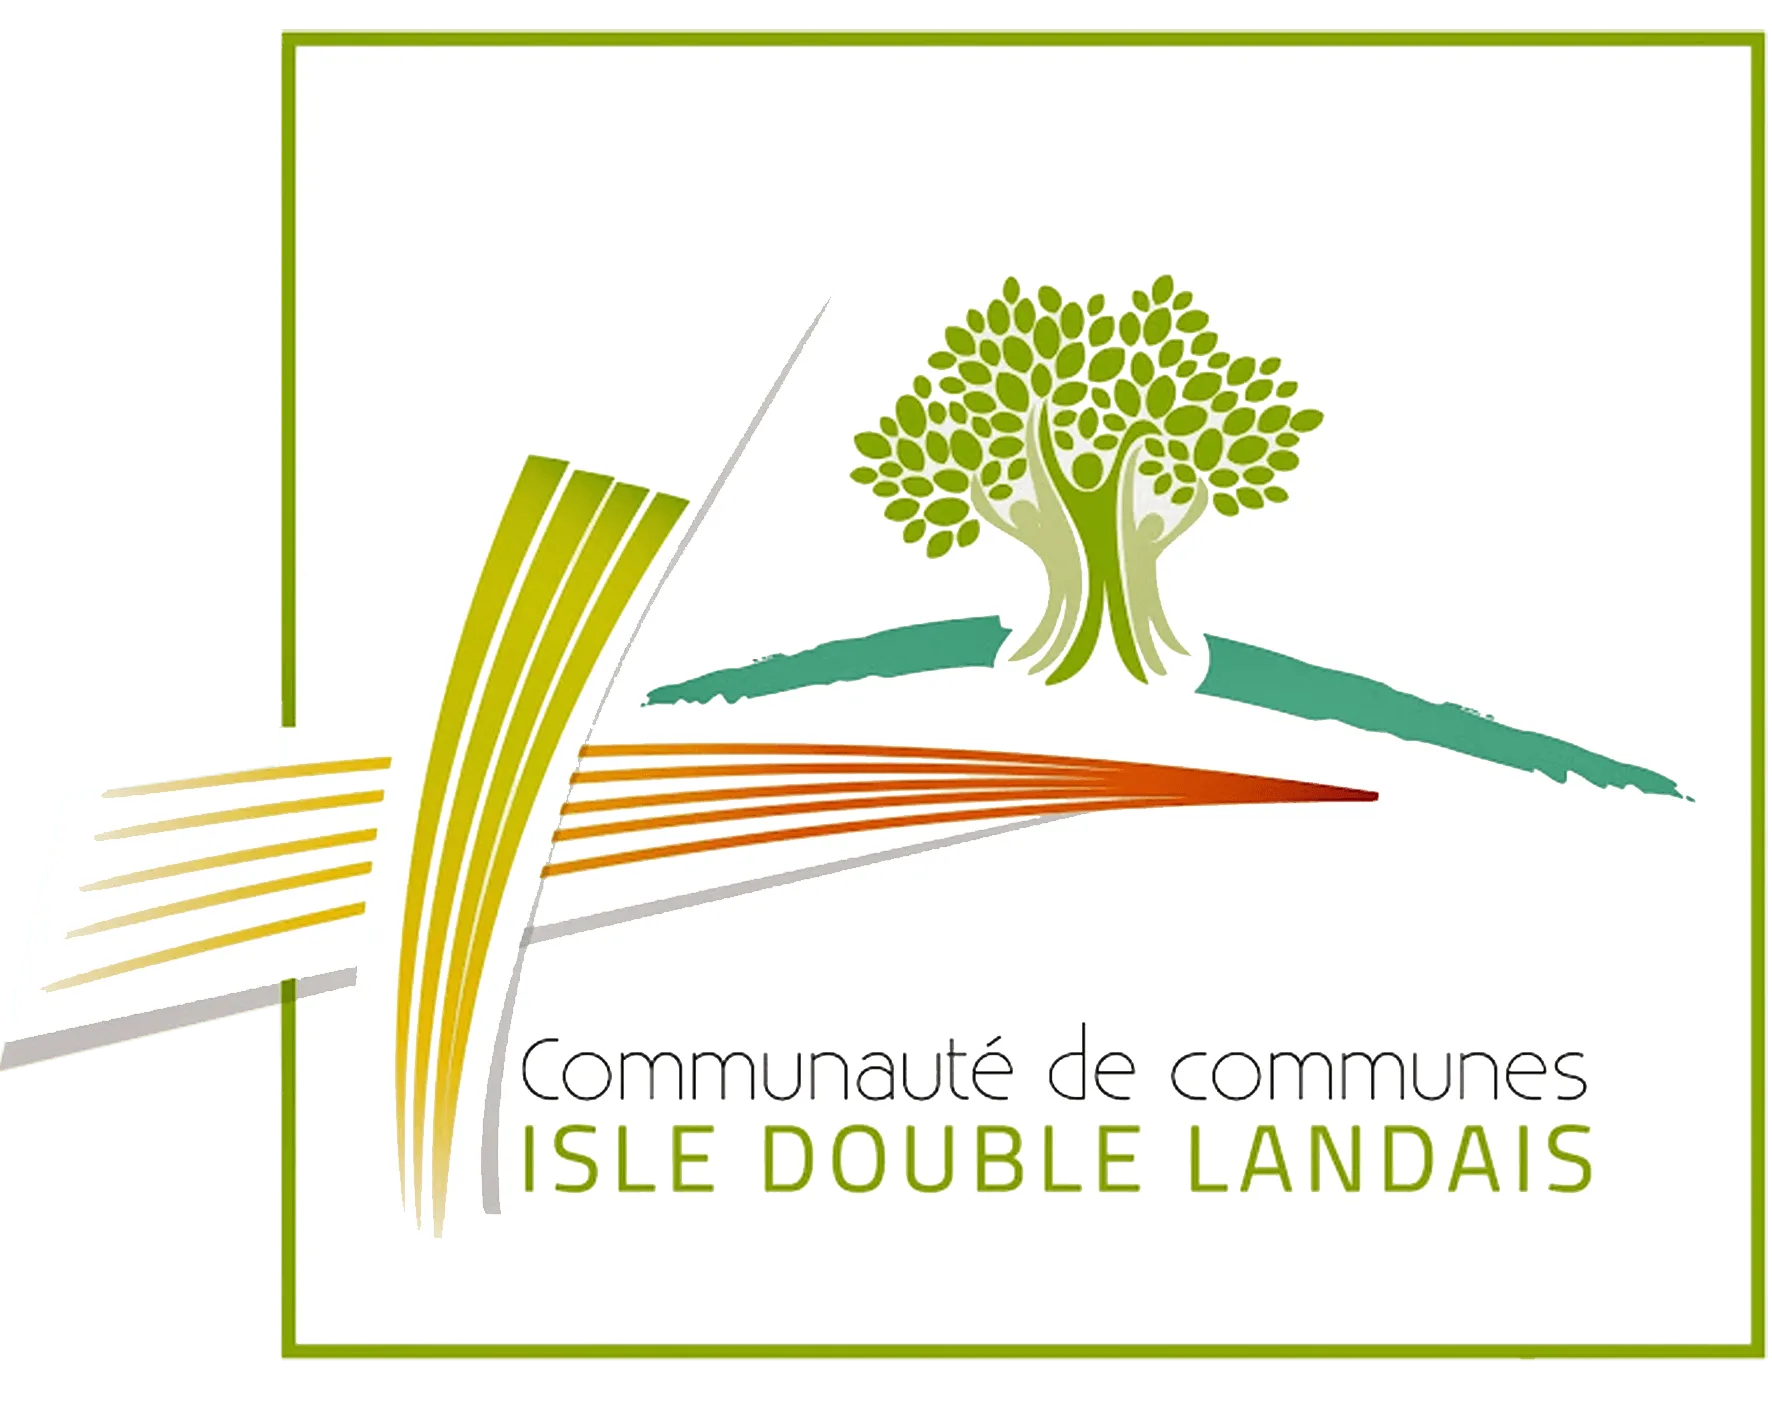 Isle Double Landais logo